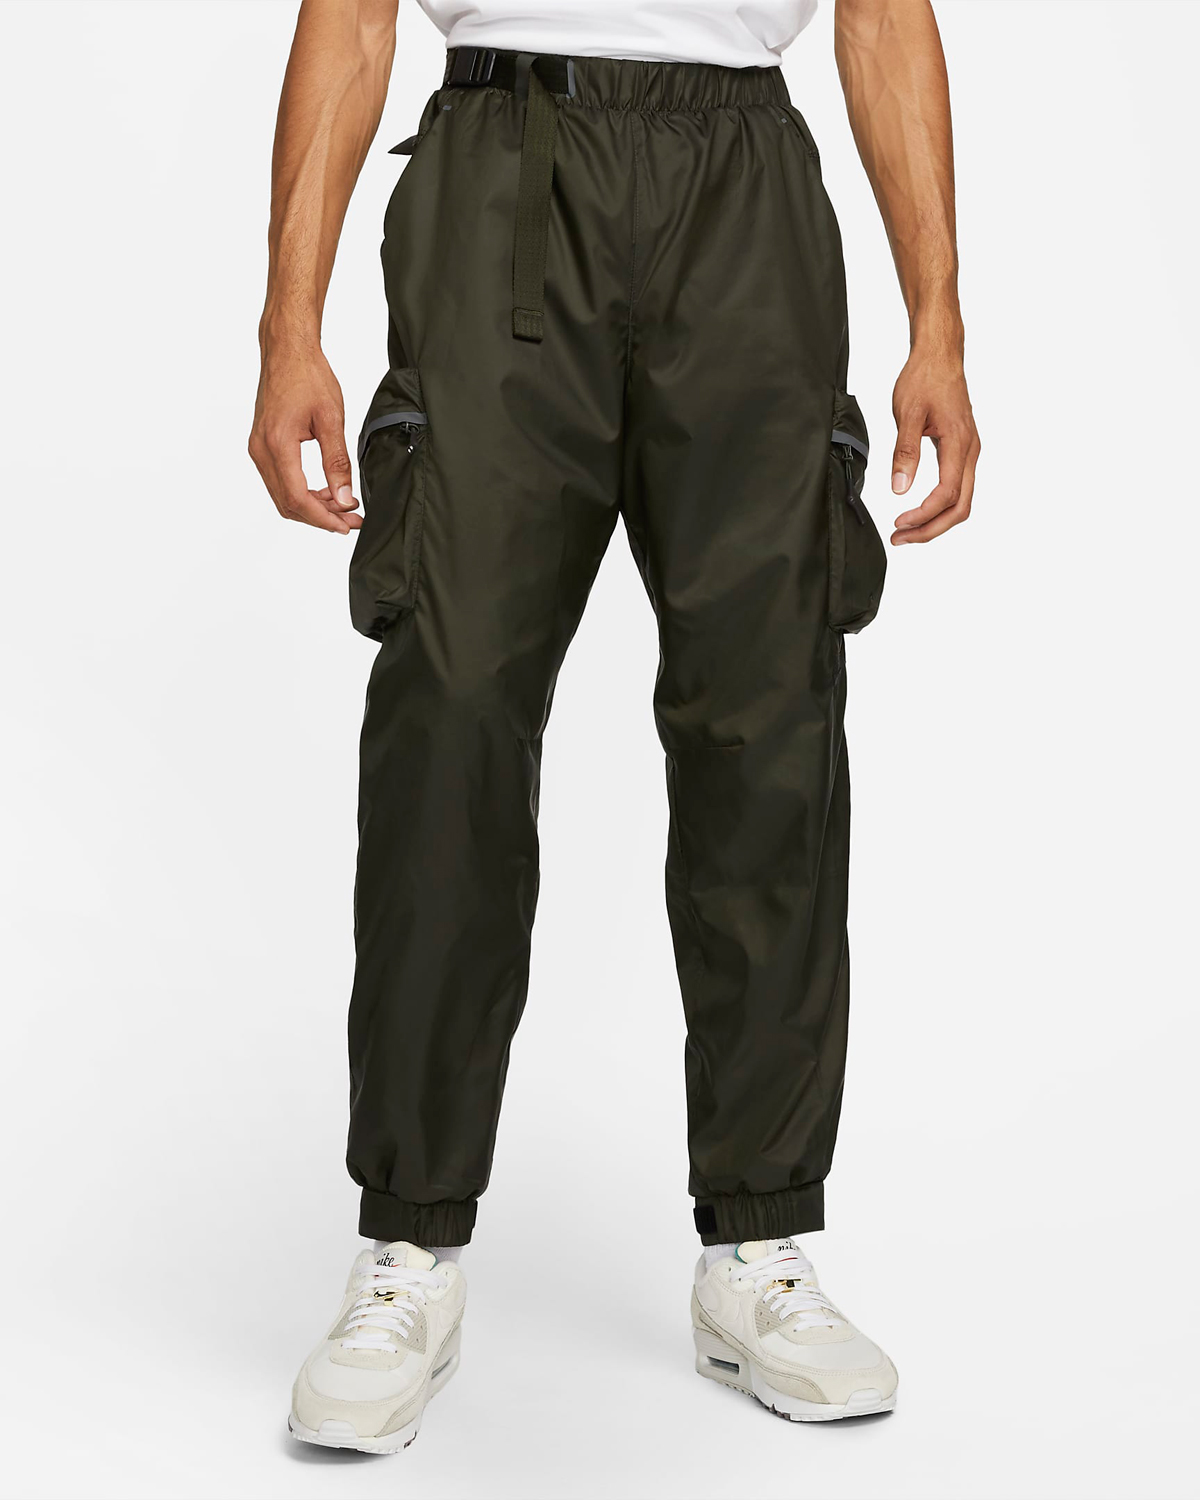 Nike-Sportswear-Tech-Pack-Woven-Pants-Sequoia